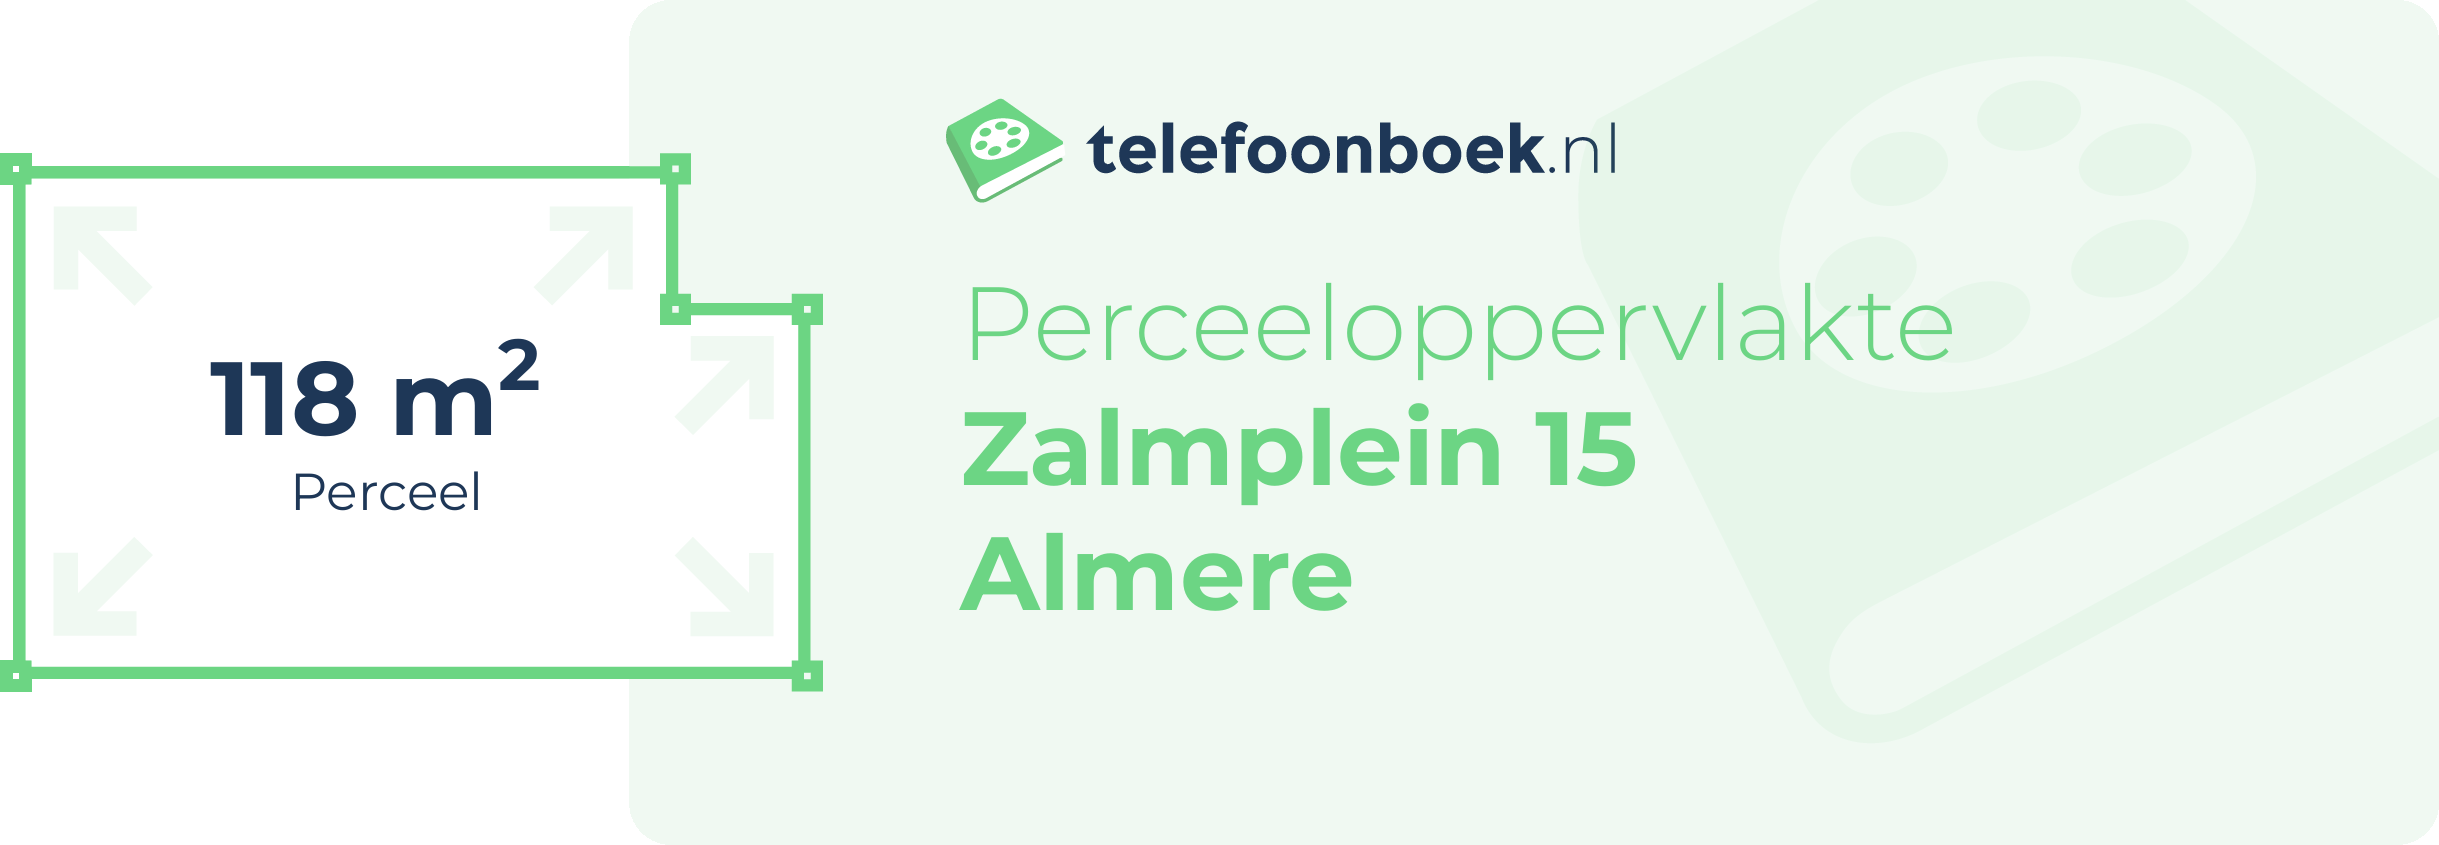 Perceeloppervlakte Zalmplein 15 Almere